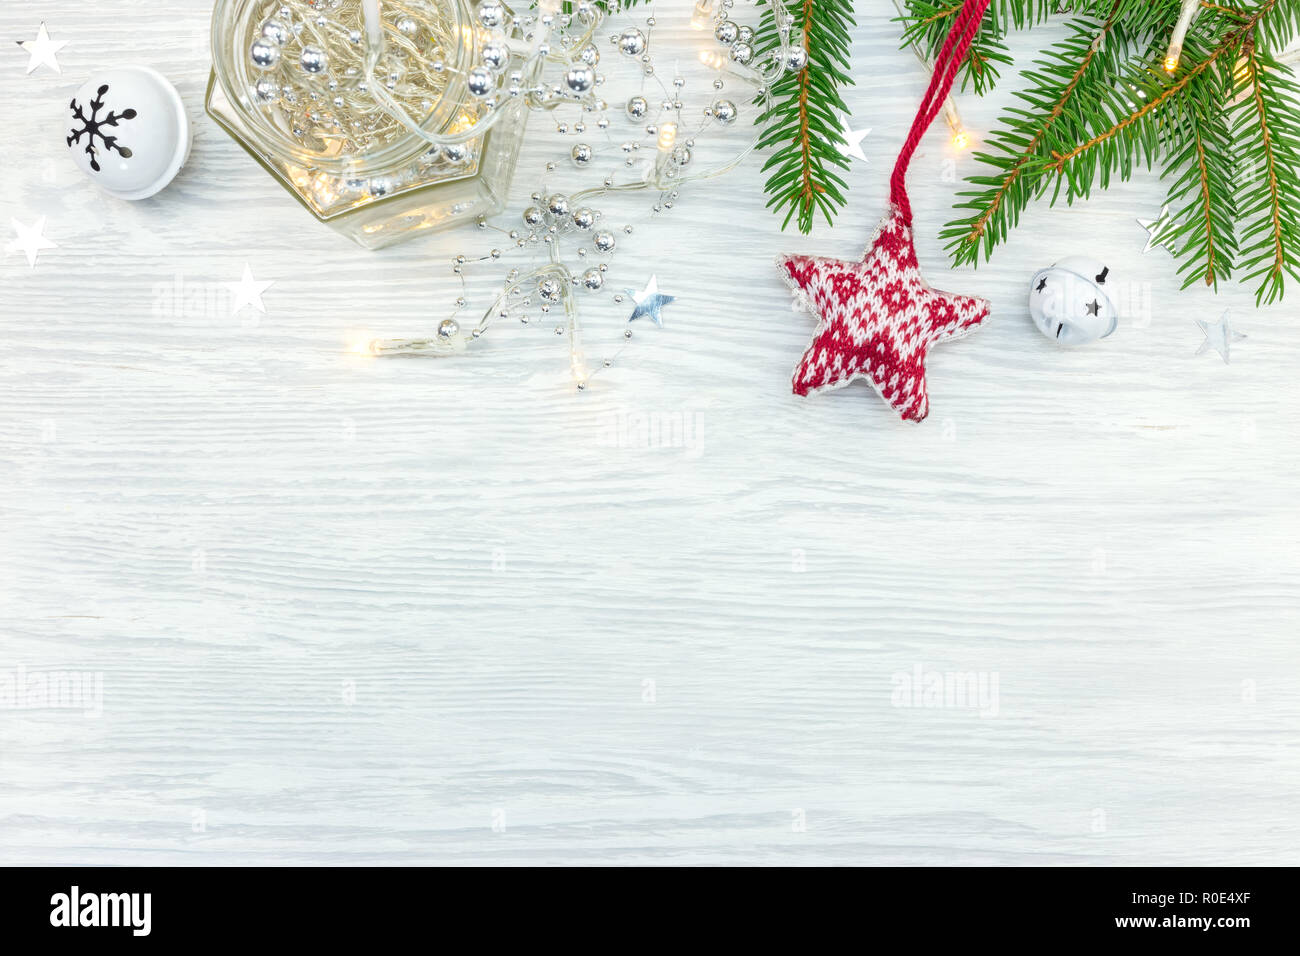 Weihnachtsdekoration mit Lichtern Girlande, Sterne und Fir Tree Branch auf hölzernen Hintergrund Stockfoto